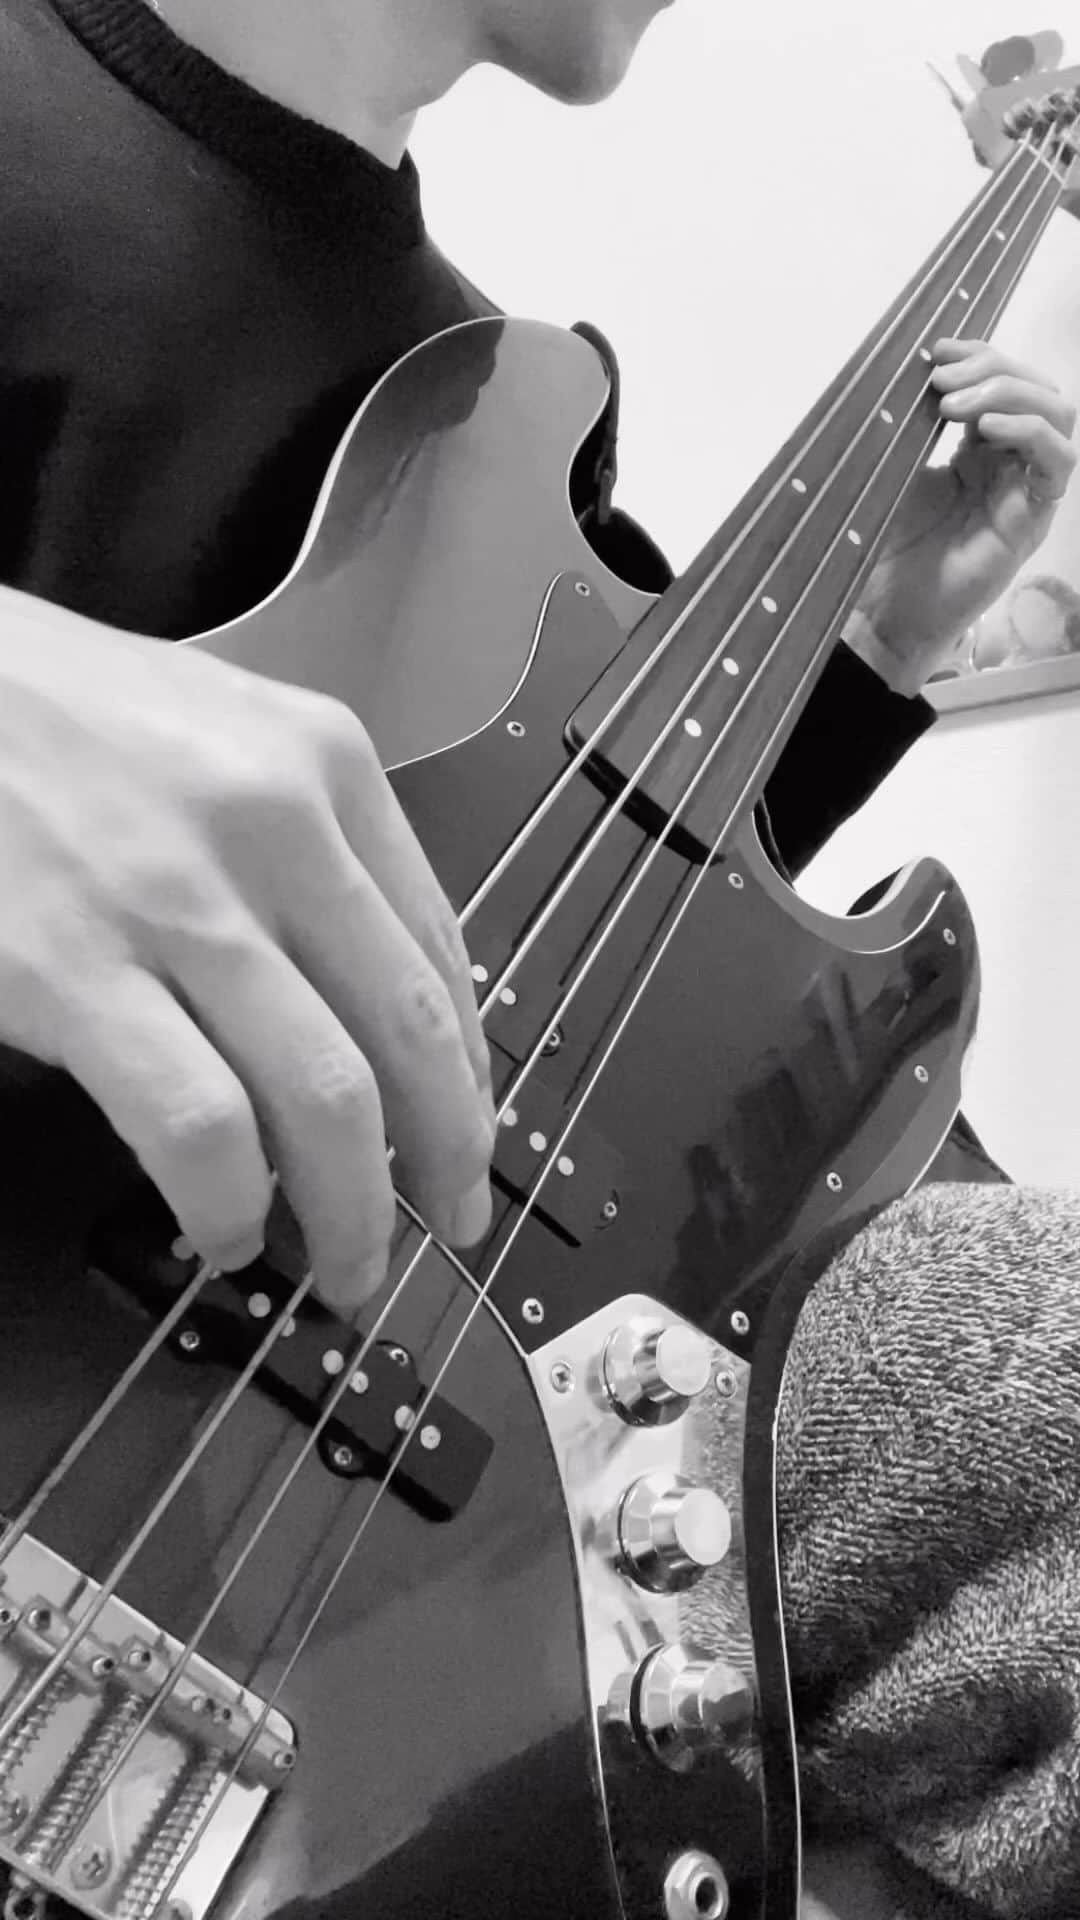 森田悠介のインスタグラム：「Practicing fretless for next gig with @r1sa.prog  Next monday! Don't miss it...👌 2/6のギグに向けてフレットレス強化。 ●南青山Zimagineにて 19:30スタートです。 作曲: R1SA(piano)  Feb.6 ＠Zimagine R1SA piano trio  with Yusuke Morita(bass) Shu Akimoto(drums)  #bass #bassist #bassplayer #musicianlife #practice #gig #jazz #progressive #pianotrio #tokyo #composer #pianomusic #contemporaryjazz #fretlessbass #fender #ベース #フレットレス #練習」